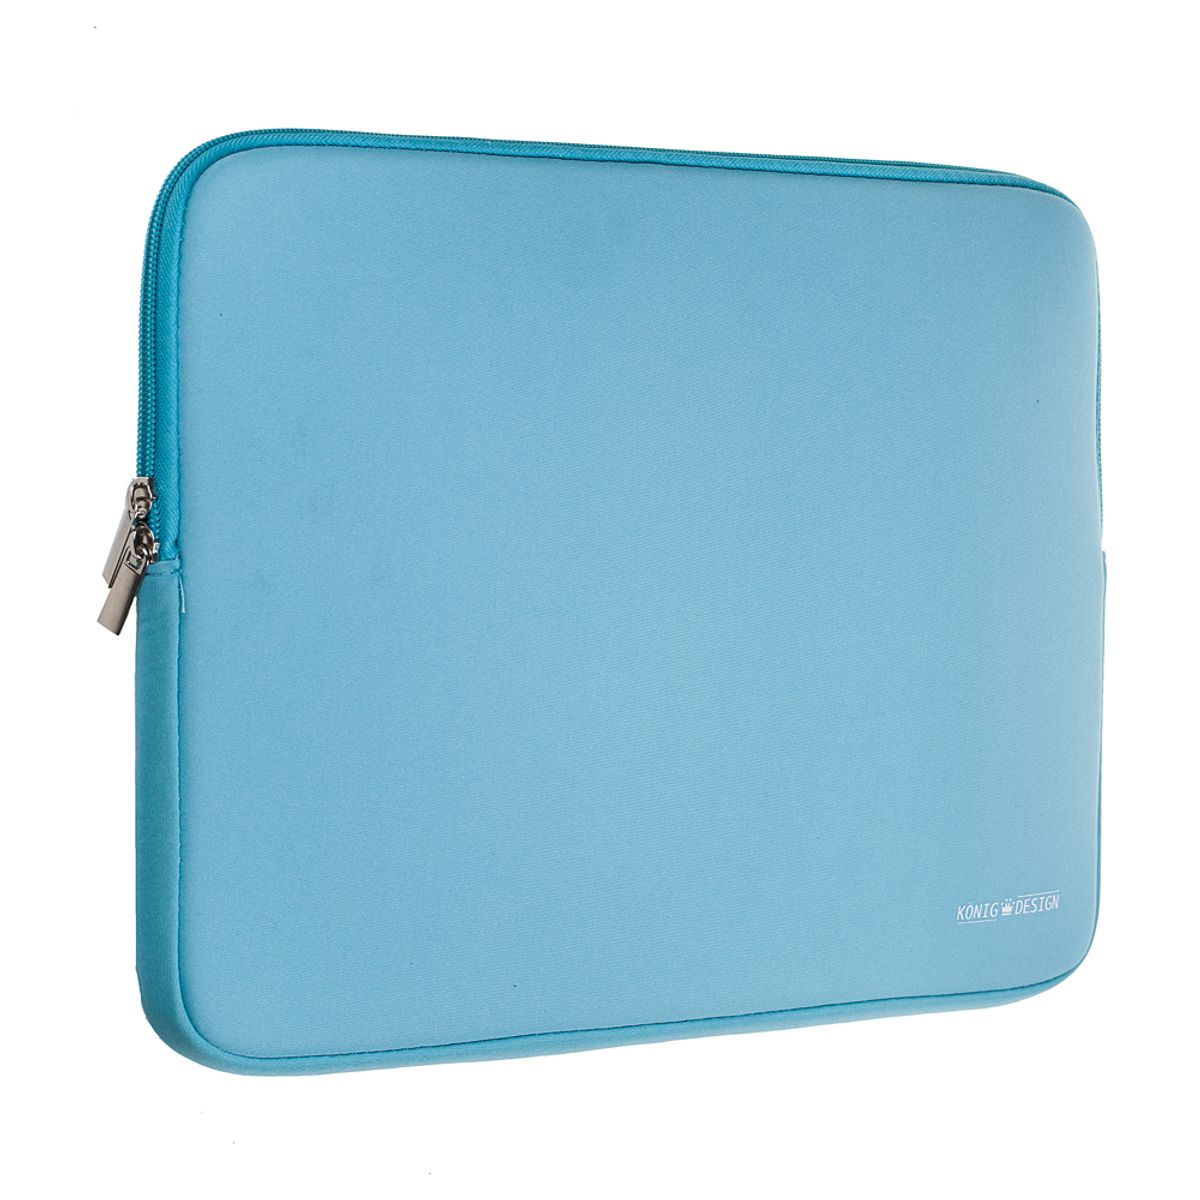 König Design Laptoptasche Laptophülle 14 - 15,6 Zoll stoßfeste Notebooktasche Laptop Schutzhülle Notebook Sleeve Hülle PC Laptop Schutztasche Blau